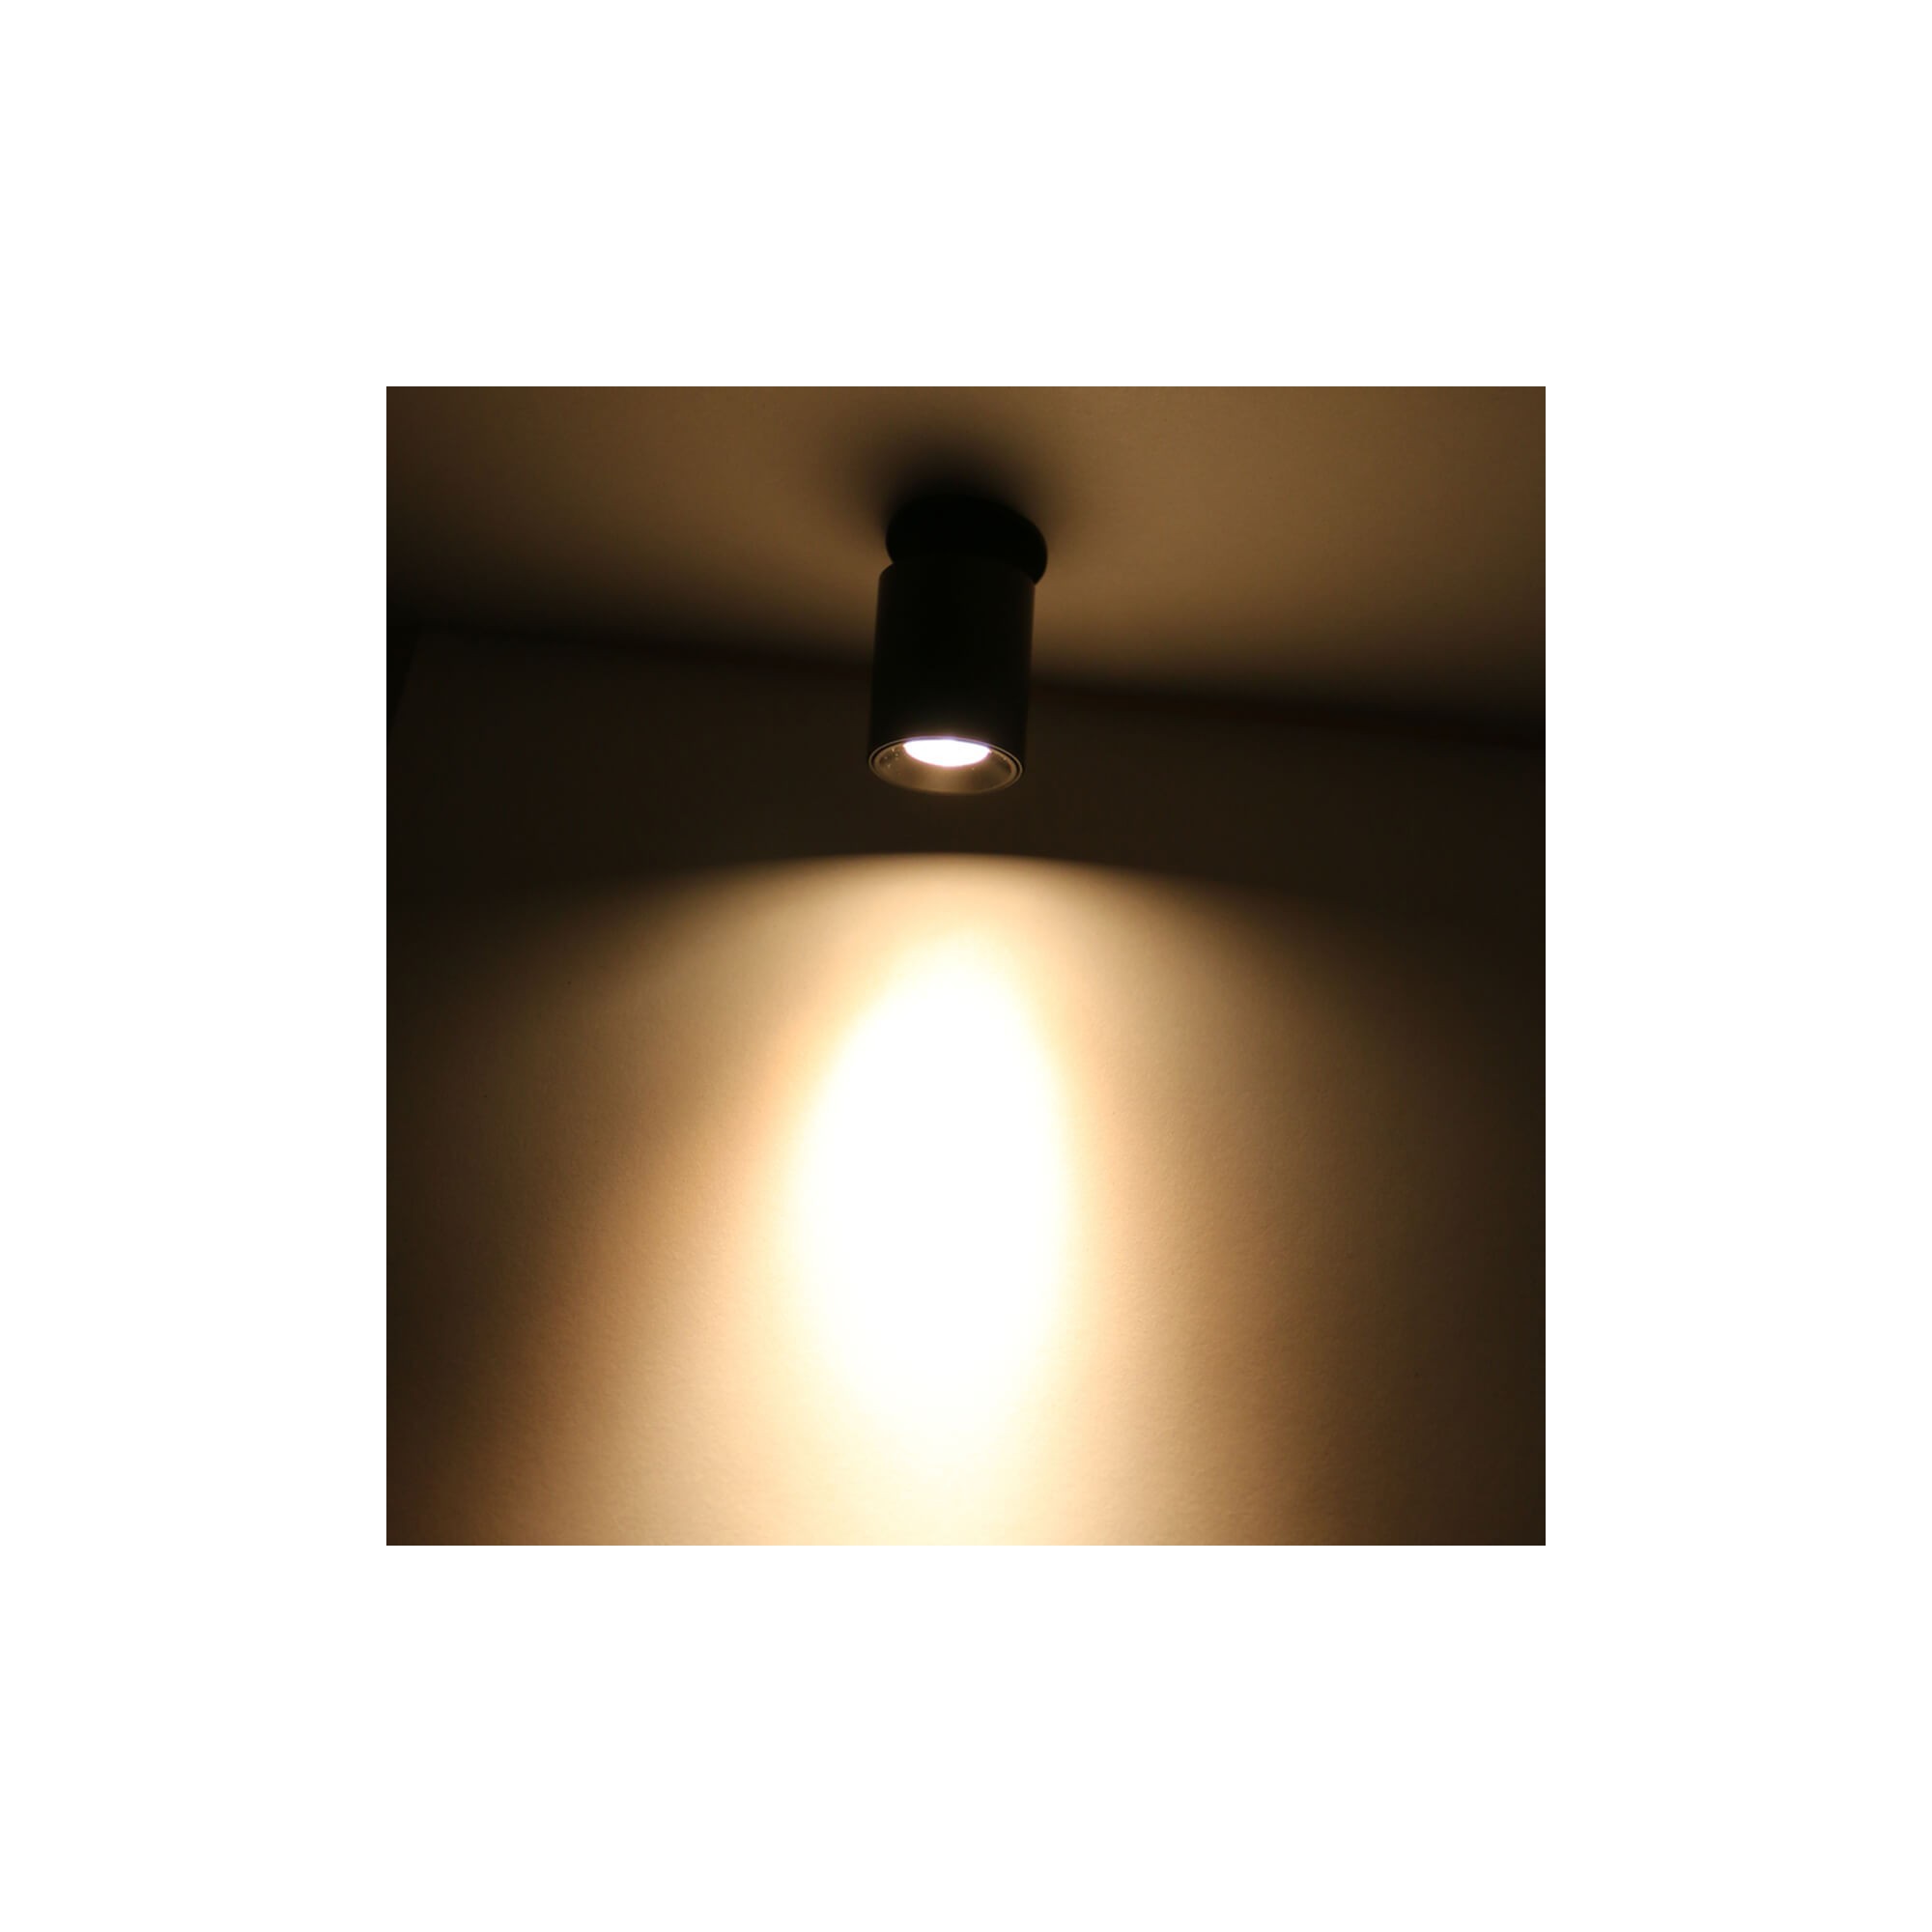 LED Mini Recessed Spotlight "TINI" 1W Rotating & Swivelling